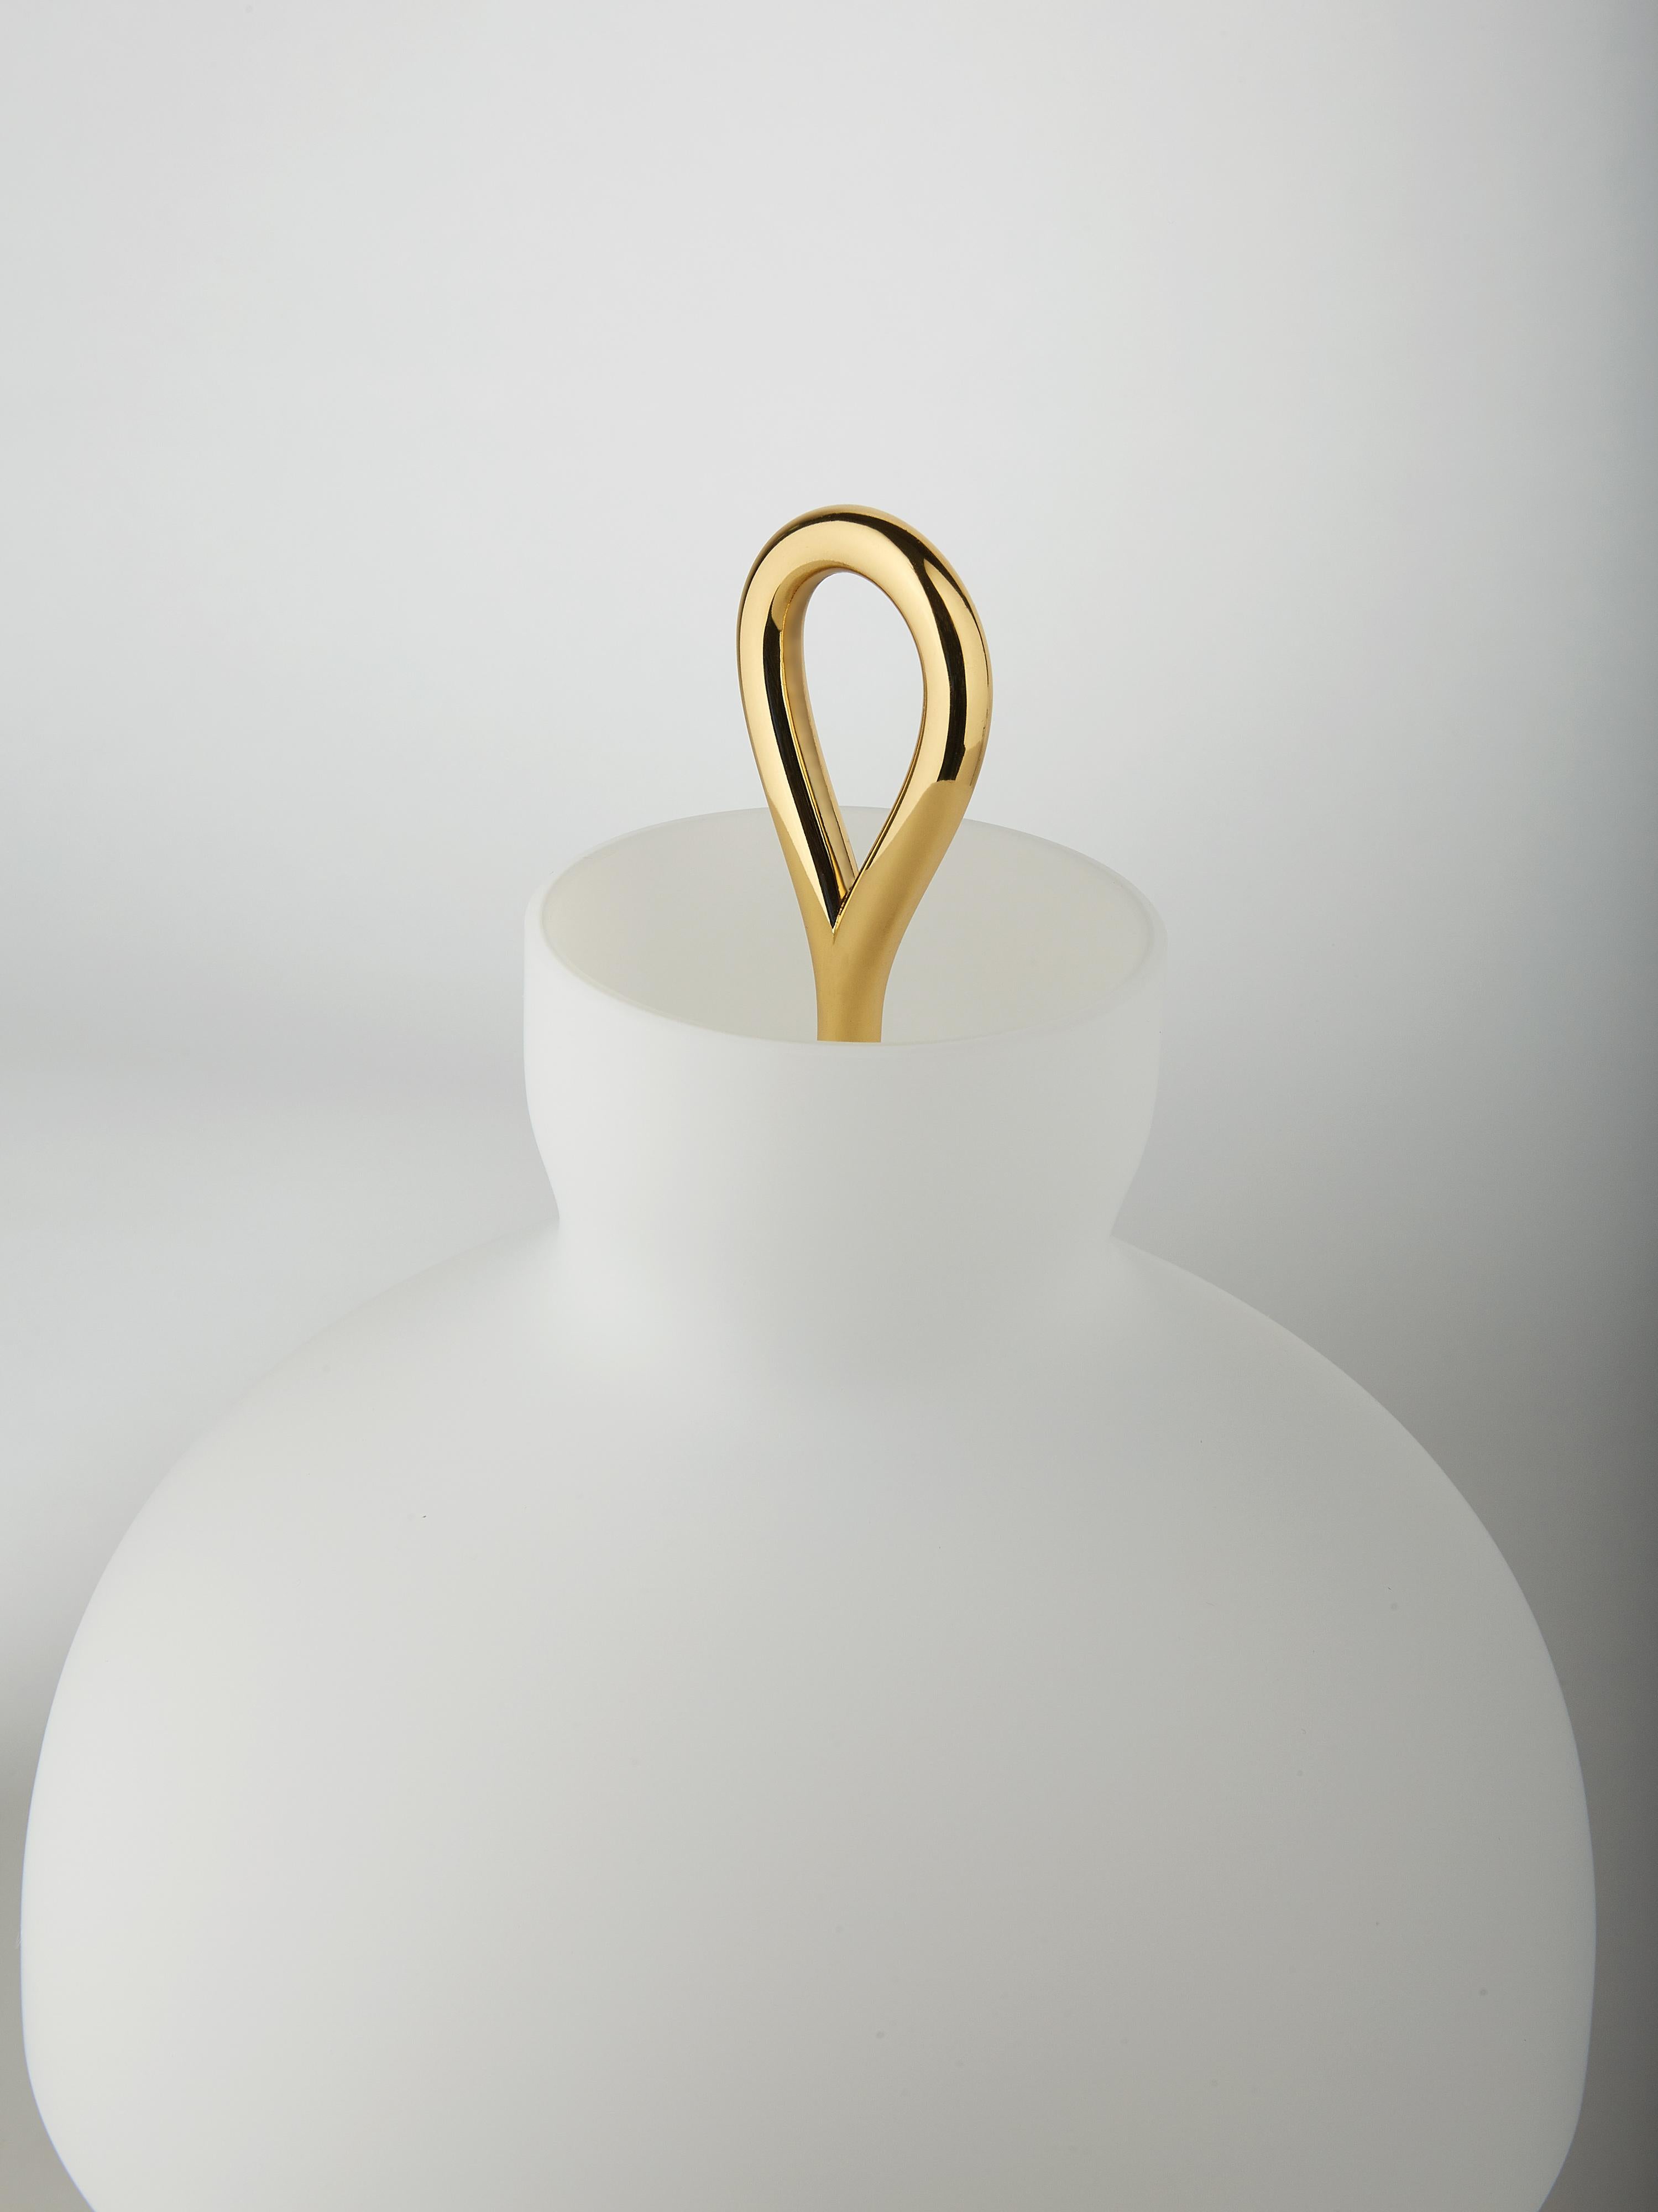 Ignazio Gardella 'Arenzano Bassa' Table Lamp in Brass and Glass.

Ignazio Gardella was one of the leading figures in Italian twentieth-century architecture. A graduate of the Politecnico di Milano, he founded Azucena with Luigi Caccia Dominioni and